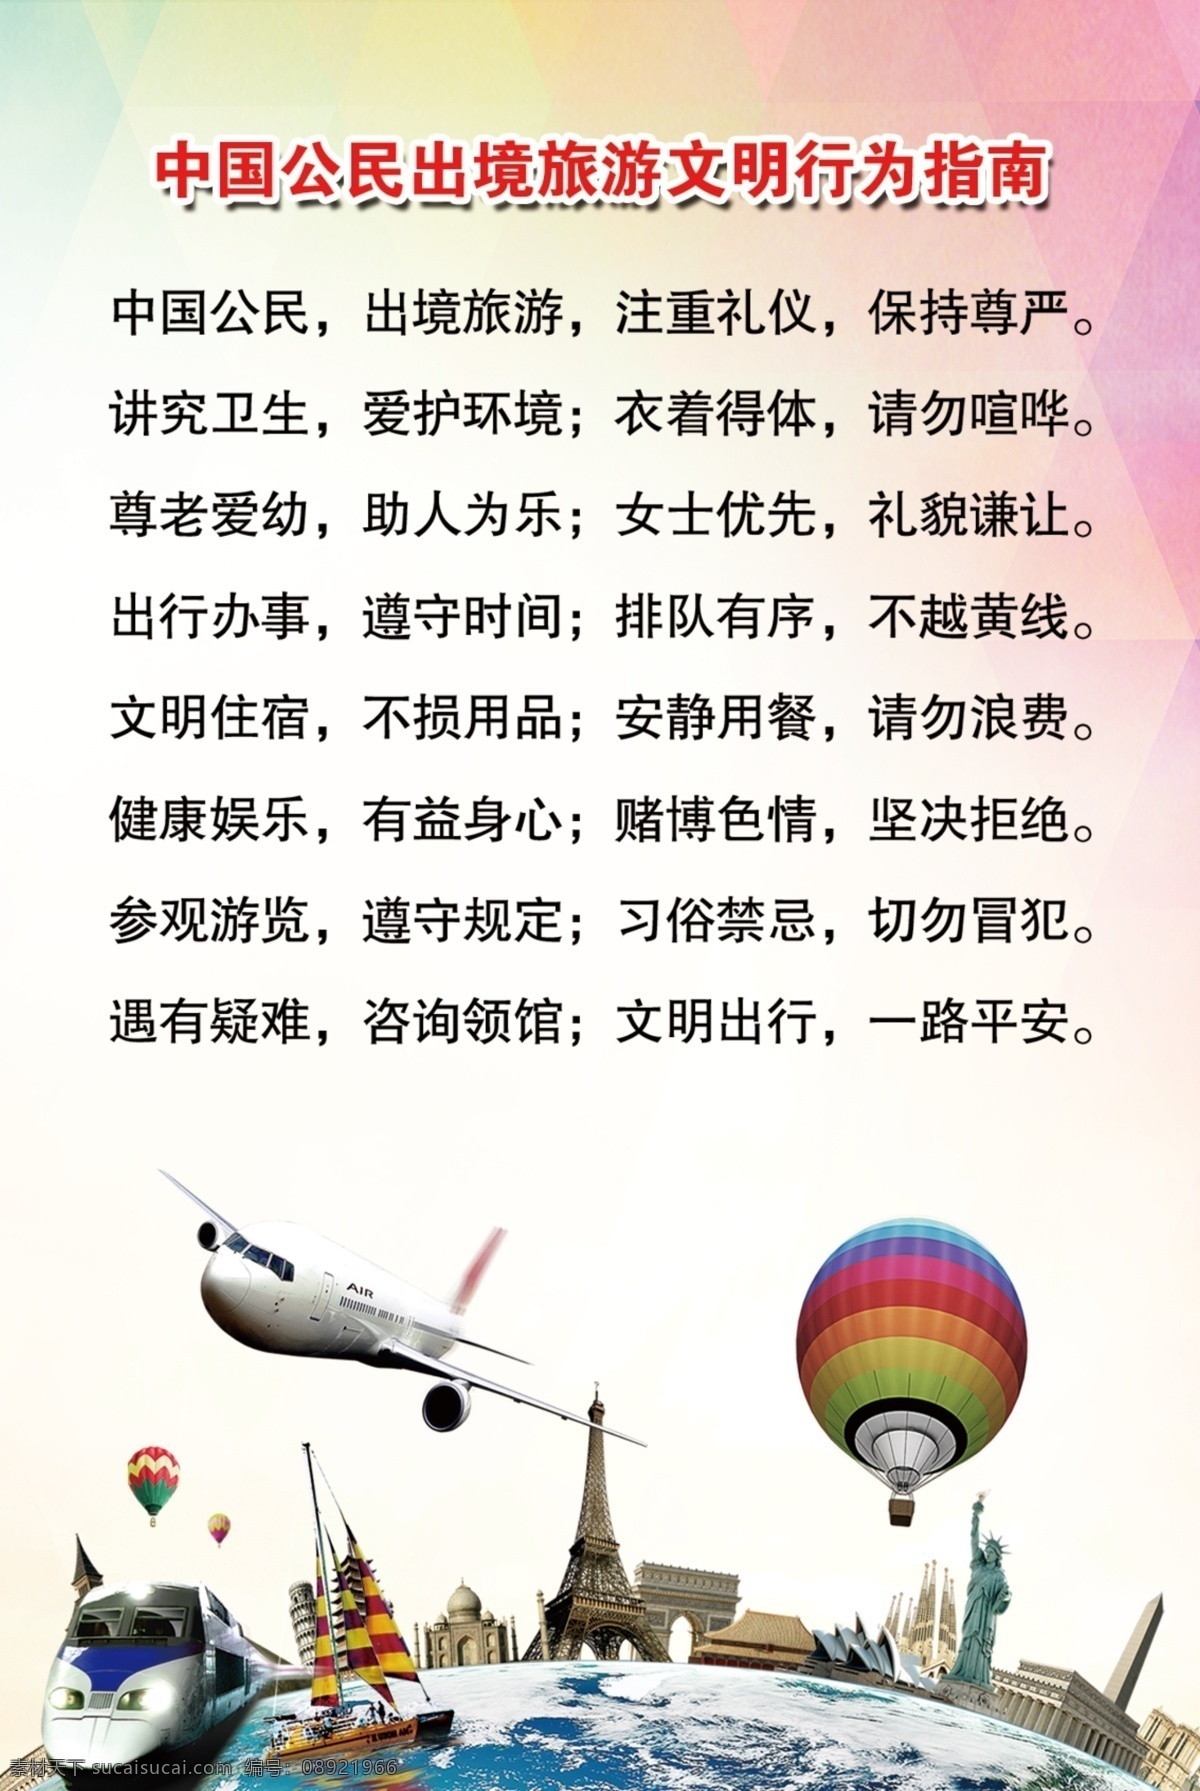 中国 公民 出境旅游 文明 行为 指南 文明旅游公约 旅游 旅游公约 文明旅游 公民旅游公约